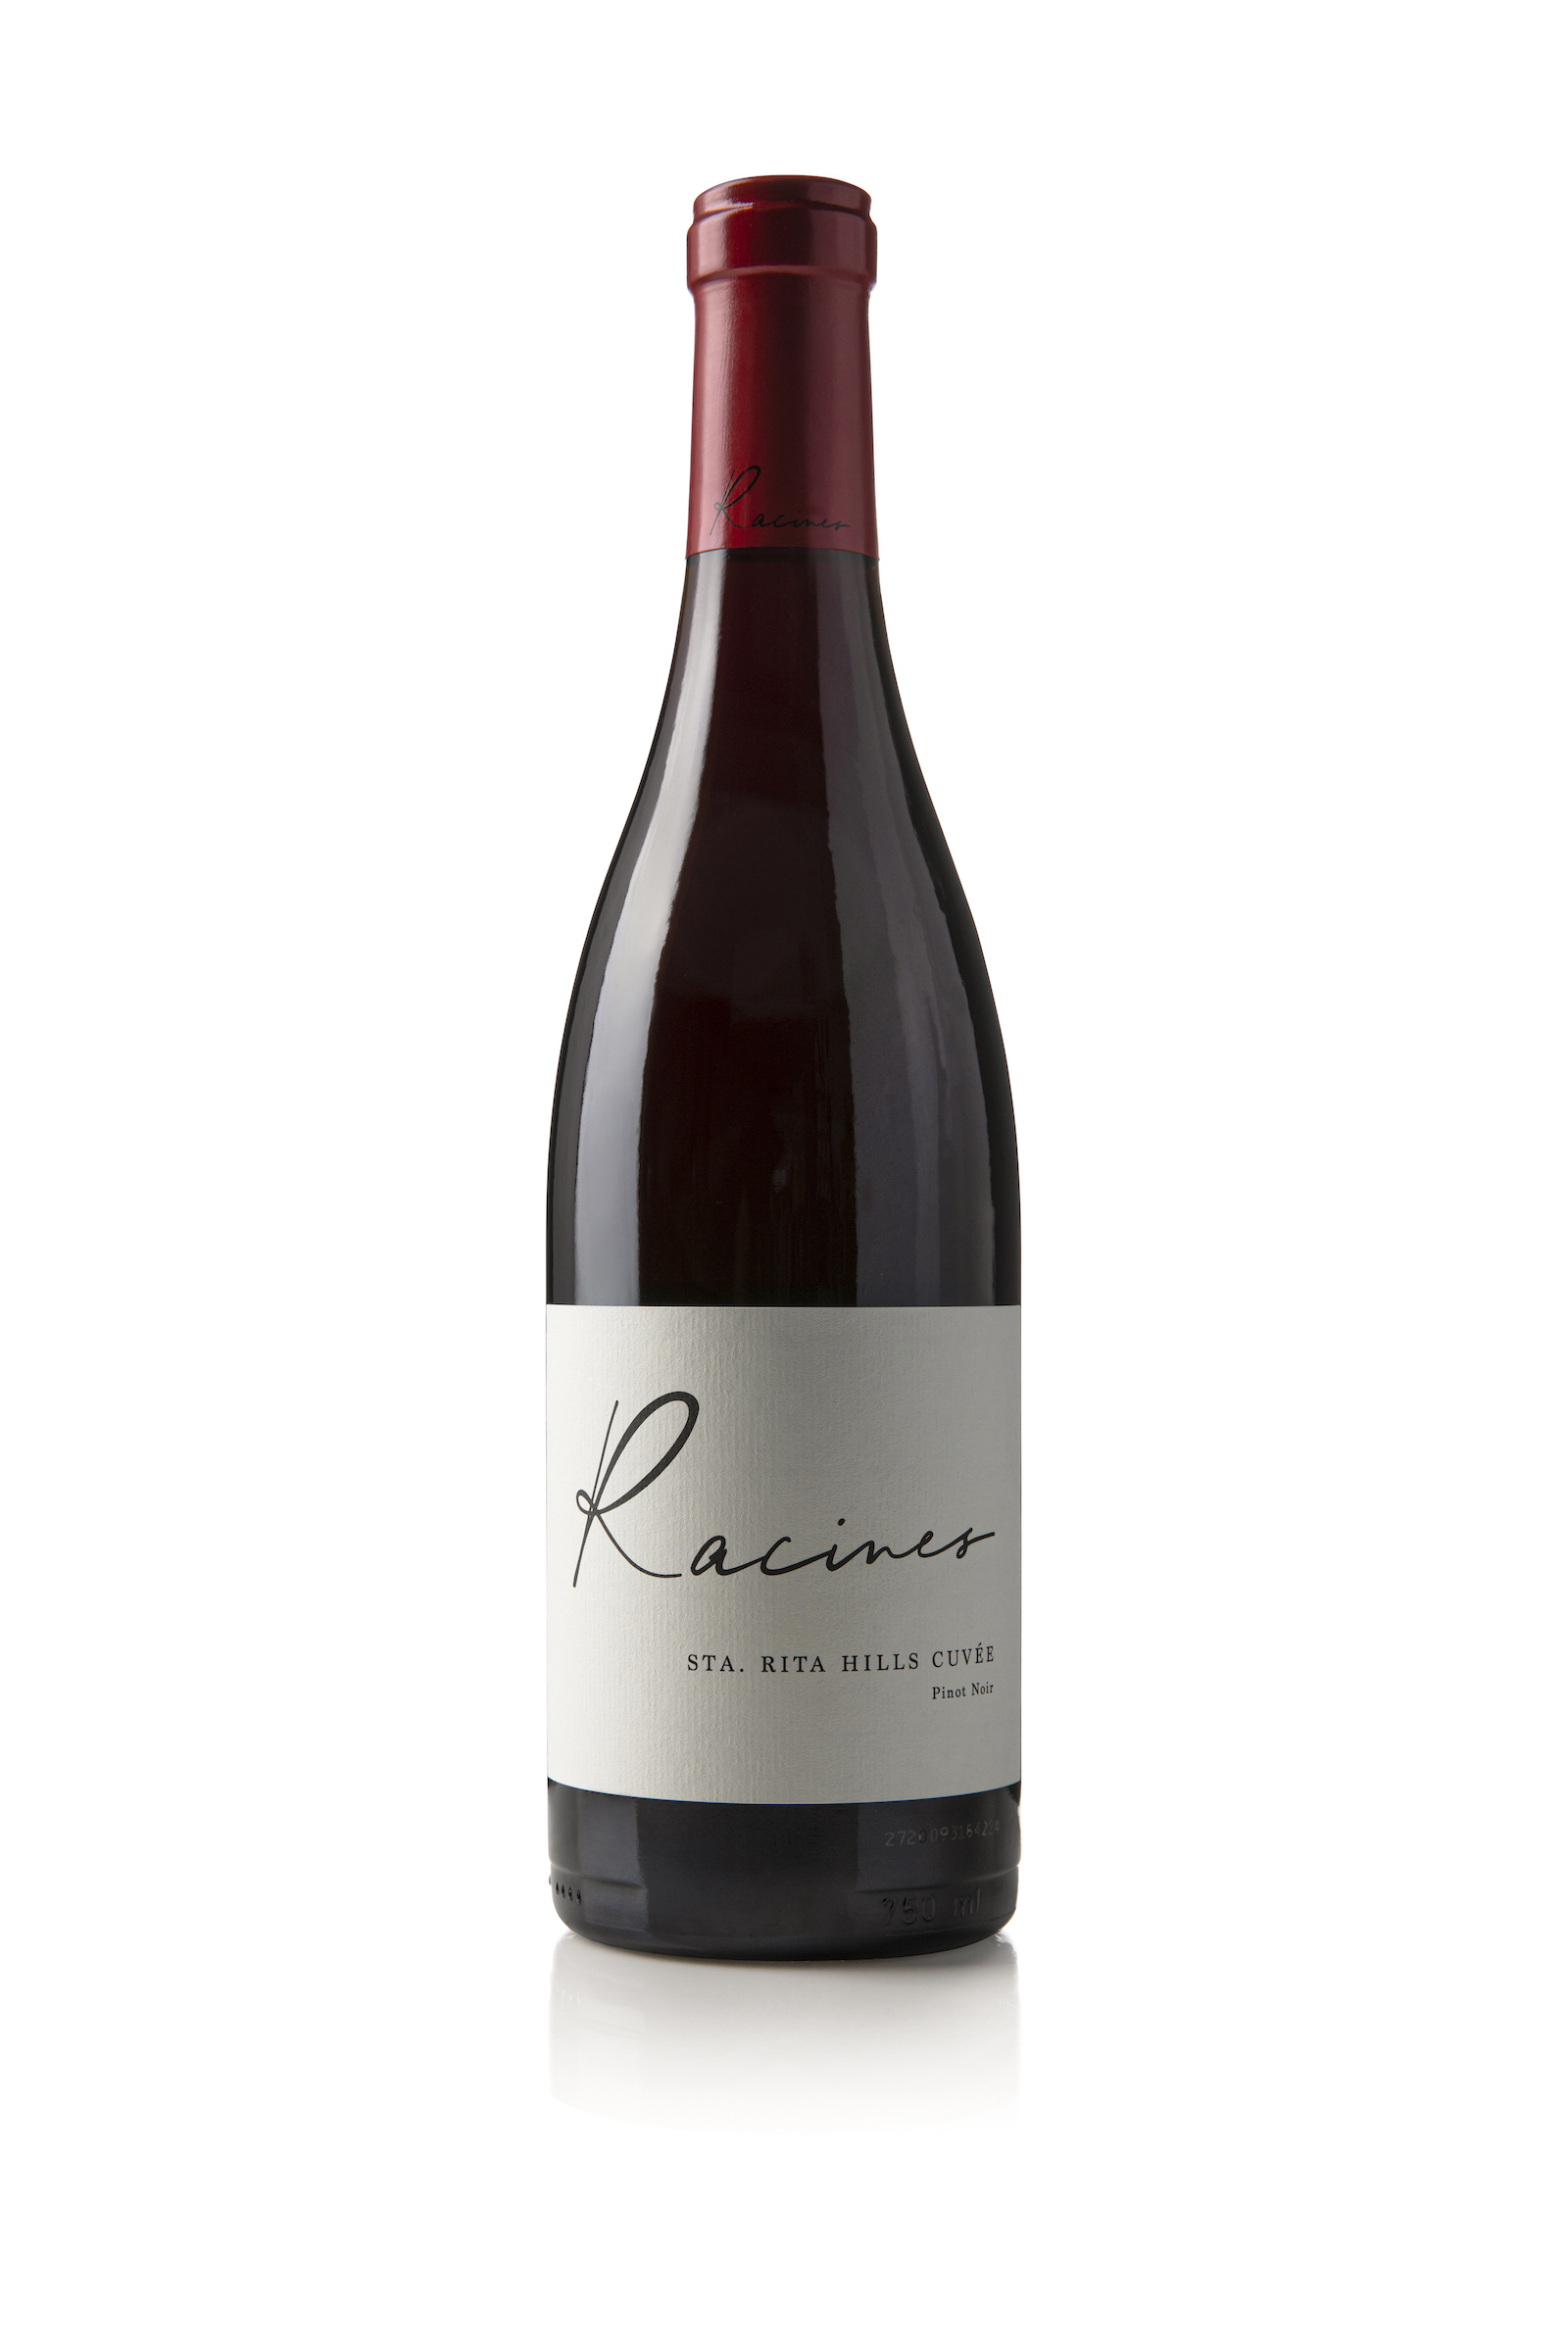 Bottle of Racines Sta. Rita Hills Cuvee Pinot Noir